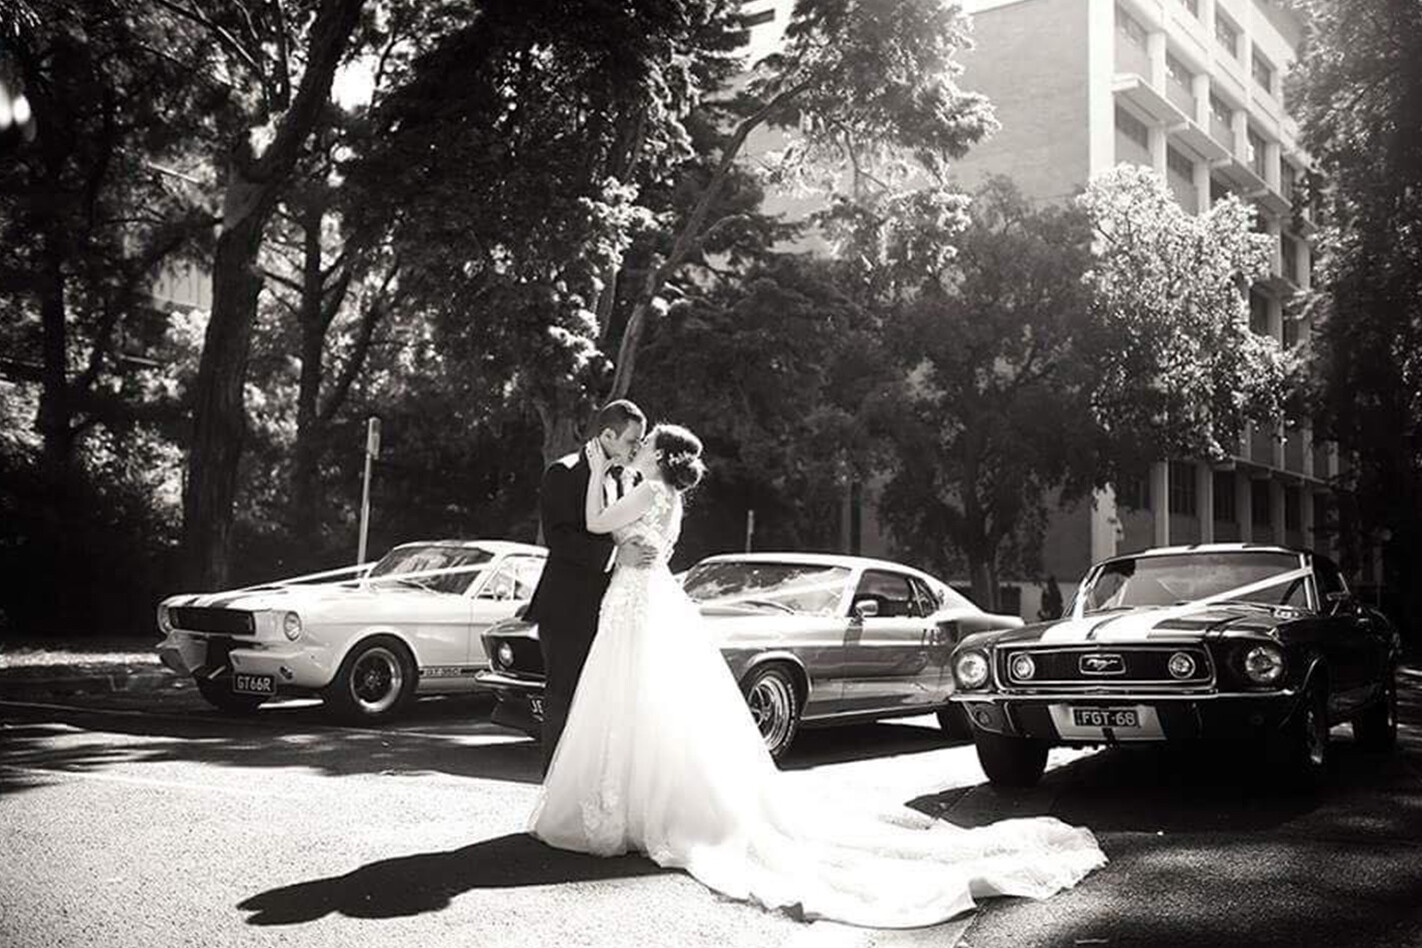 Tony Assaf's wedding cars